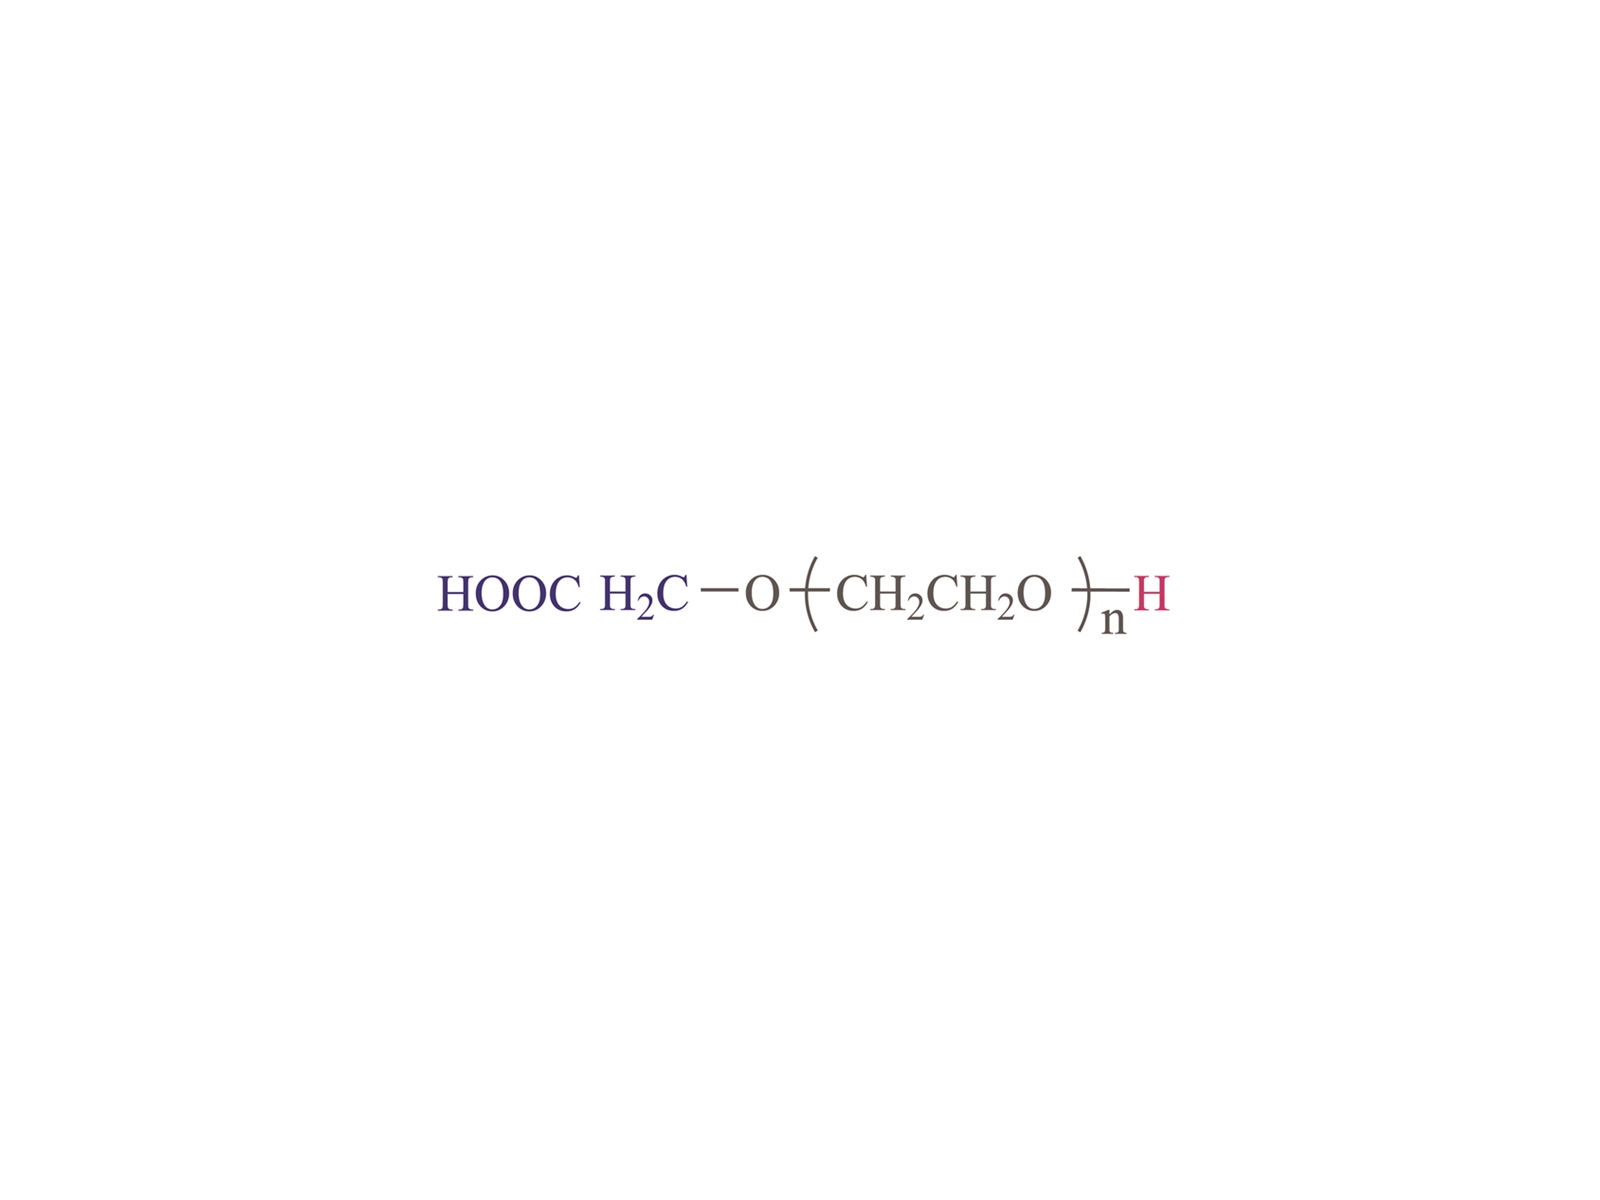 α-carboxyl-ω-hydroxyl โพลี (เอทิลีนไกลคอล) [hooc-peg-oh]